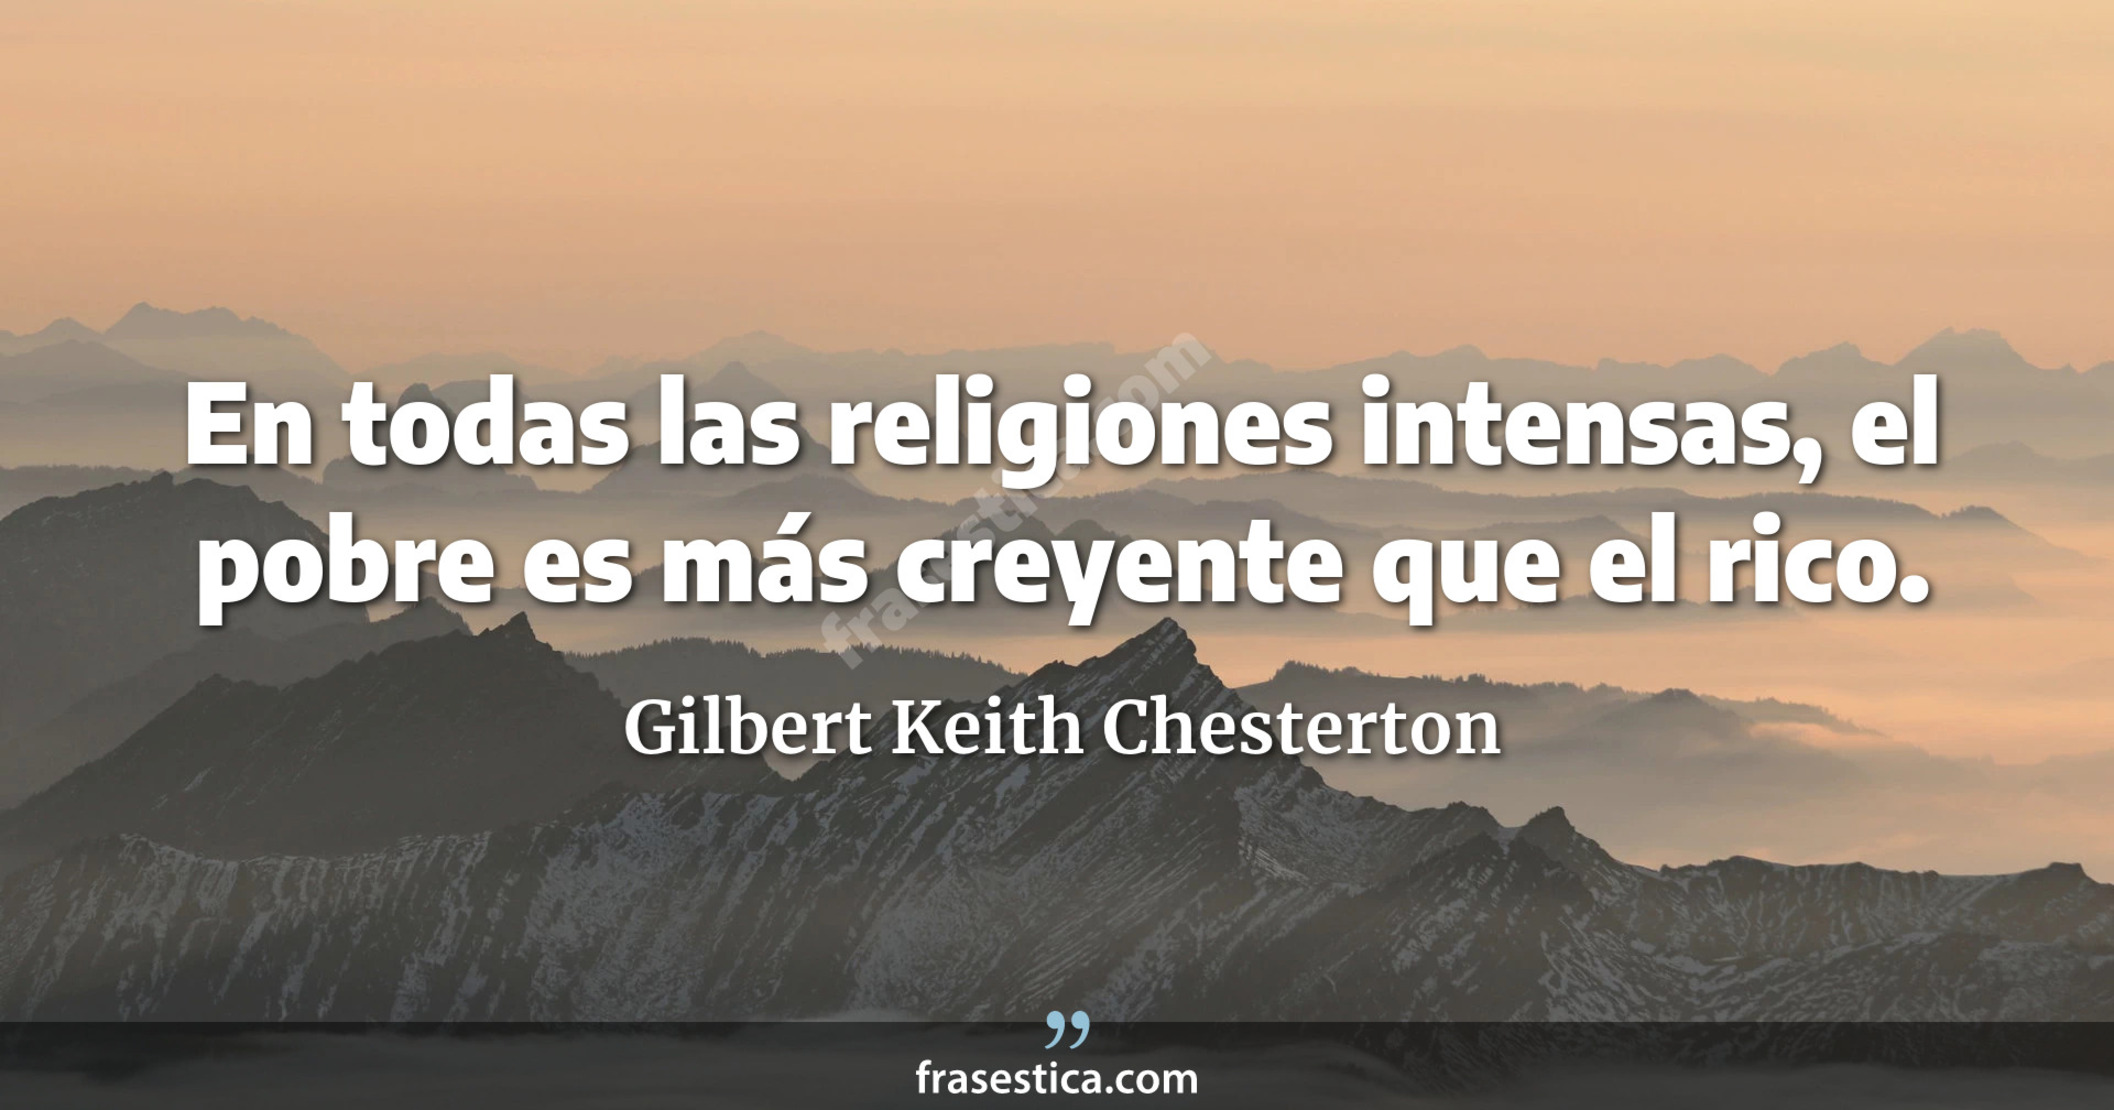 En todas las religiones intensas, el pobre es más creyente que el rico. - Gilbert Keith Chesterton